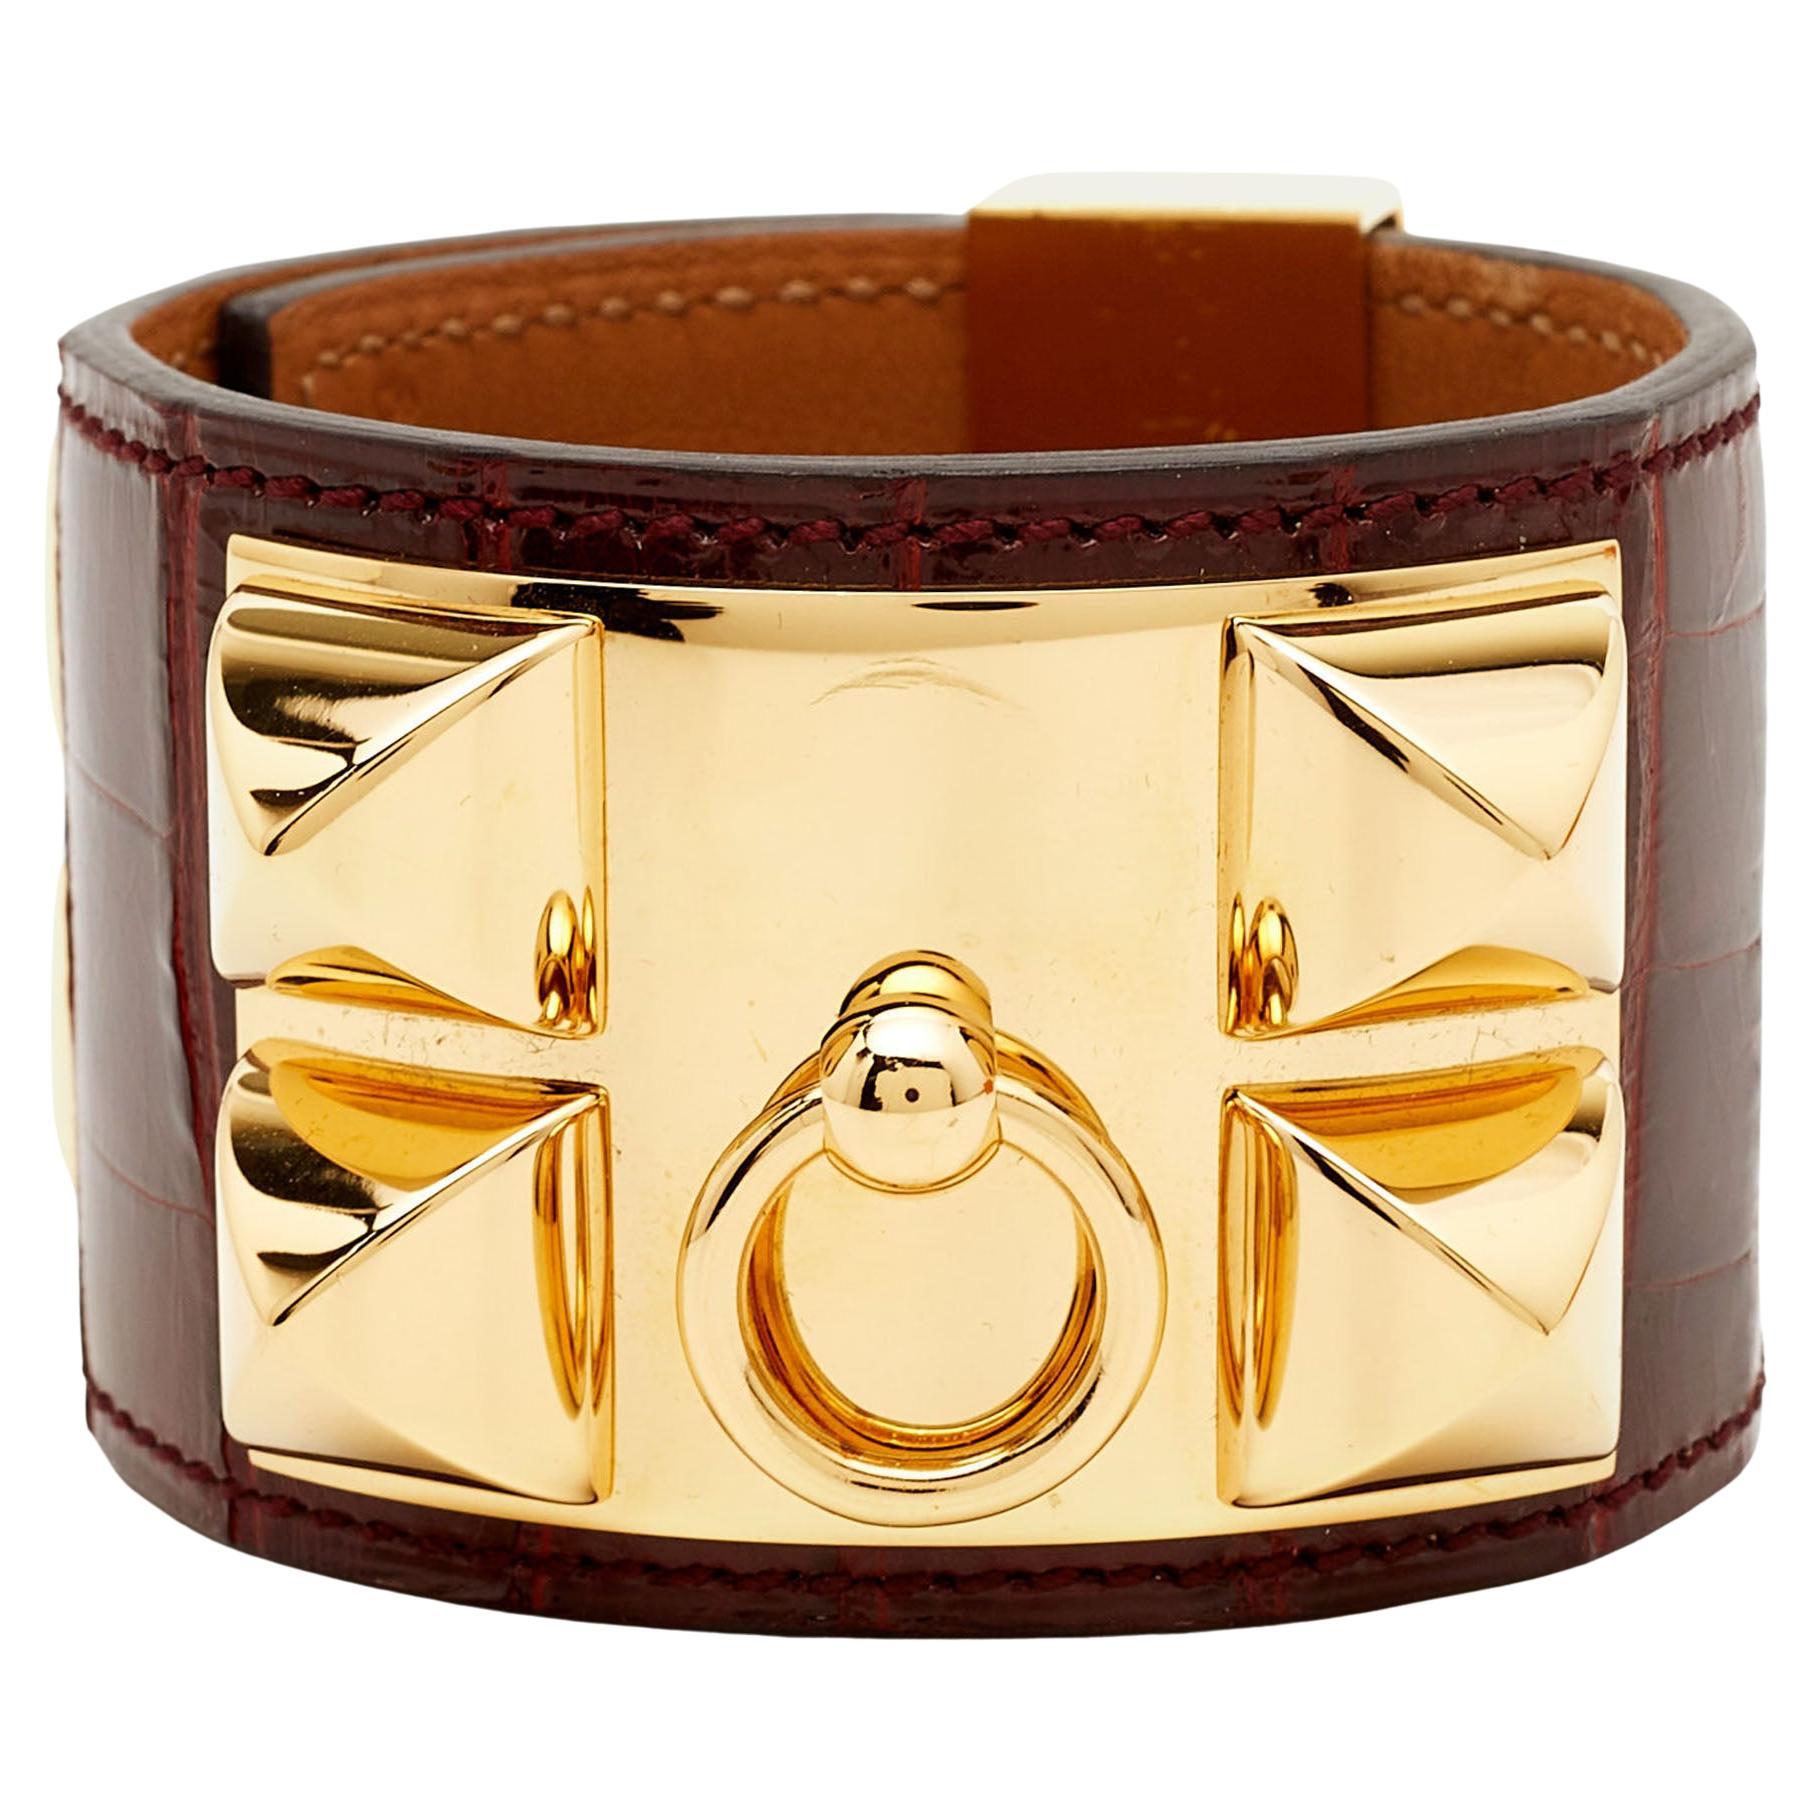 Hermes Collier De Chien Alligator Leather Gold Plated Bracelet For Sale